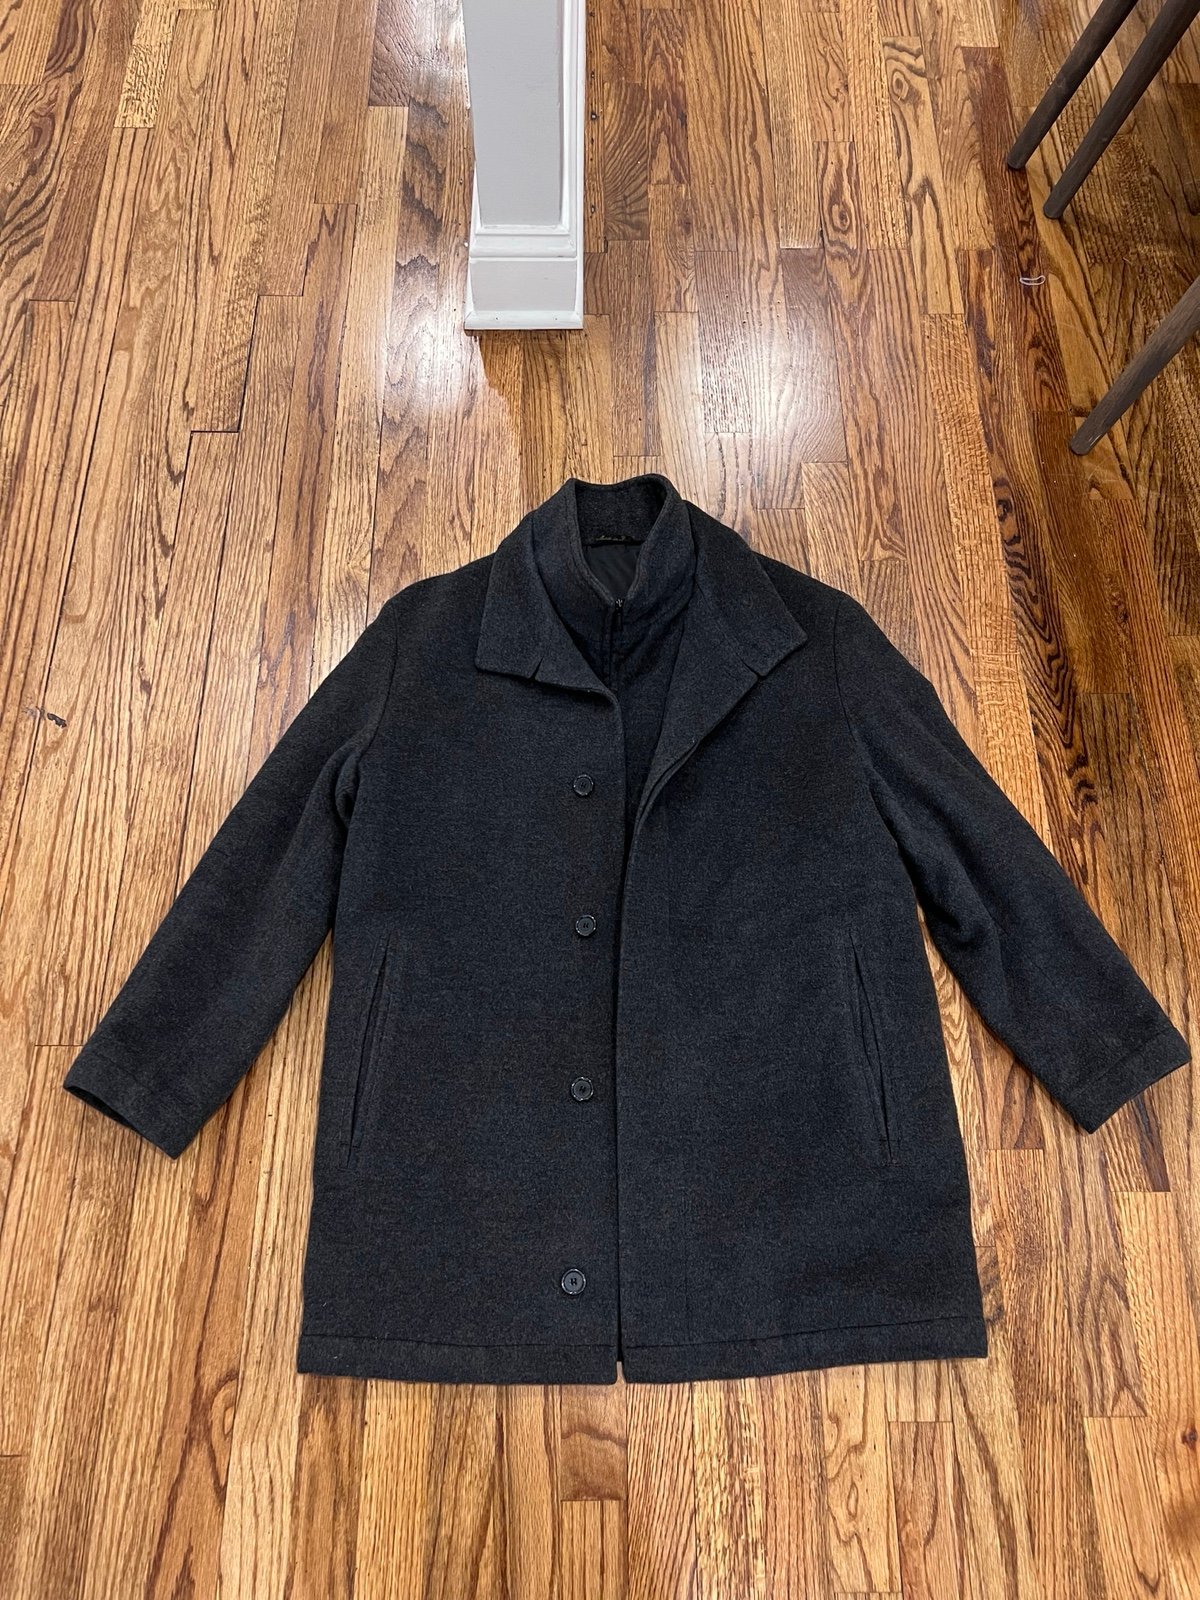 Mario Valente Men’s Peacoat Jacket Zip Up Made In Italy Dark Grey Size 50 GT8f3lZZx